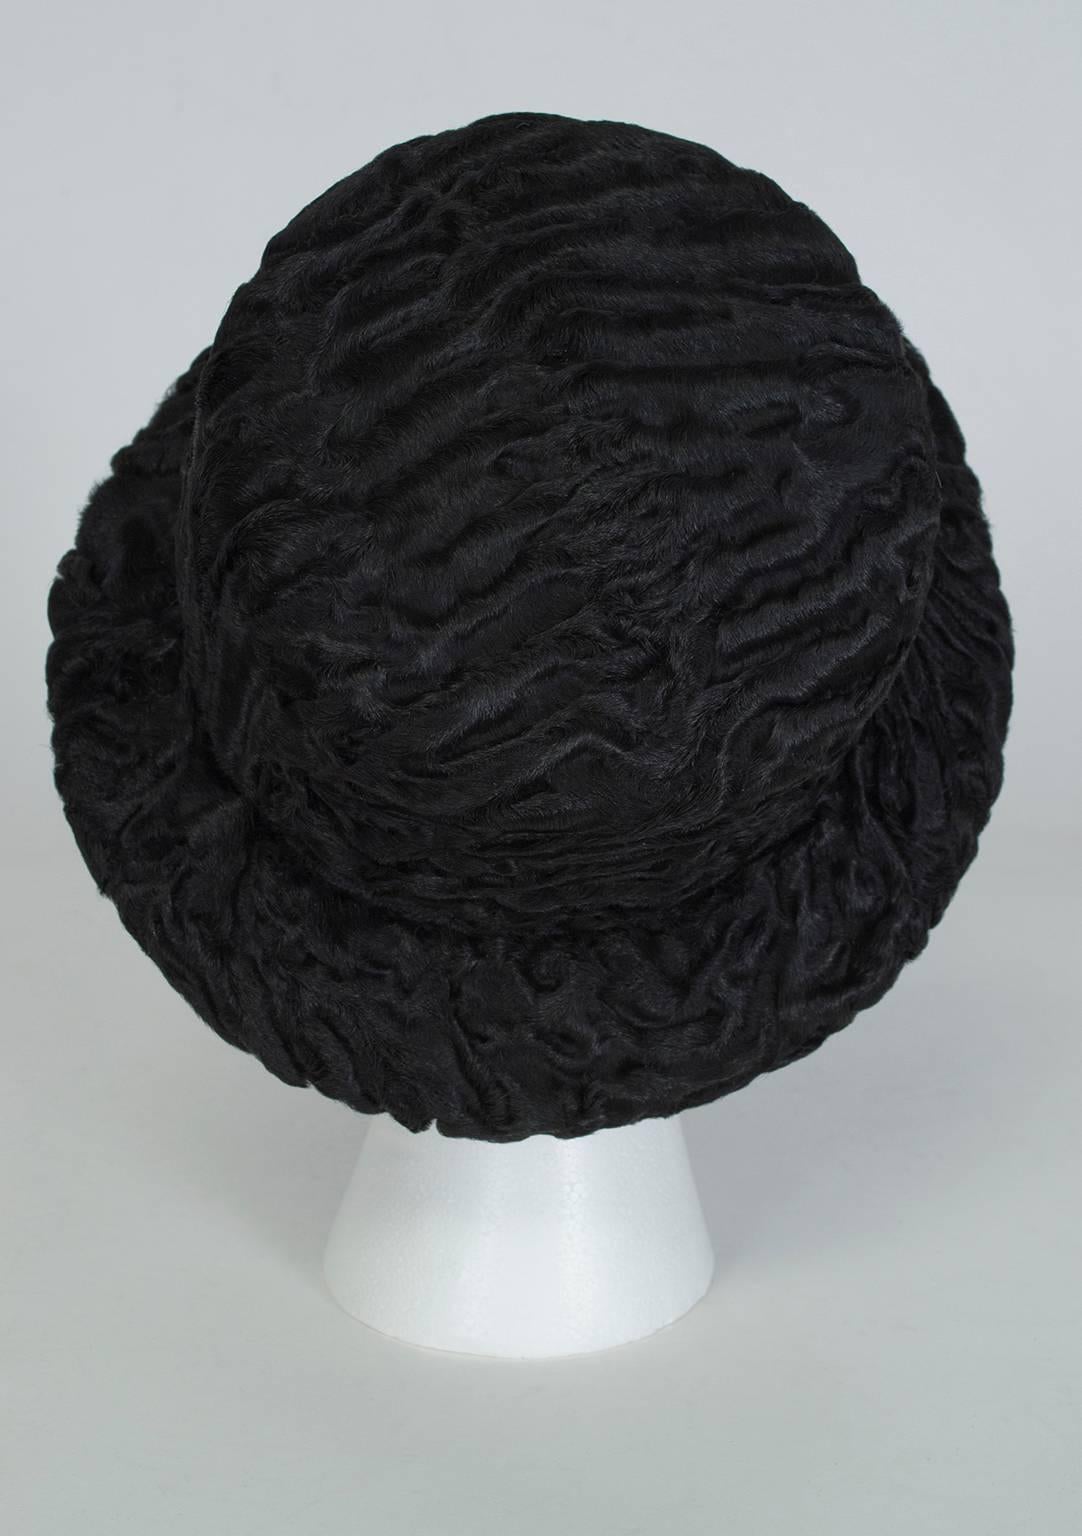 Women's Black Astrakhan Bowler Hat, 1950s